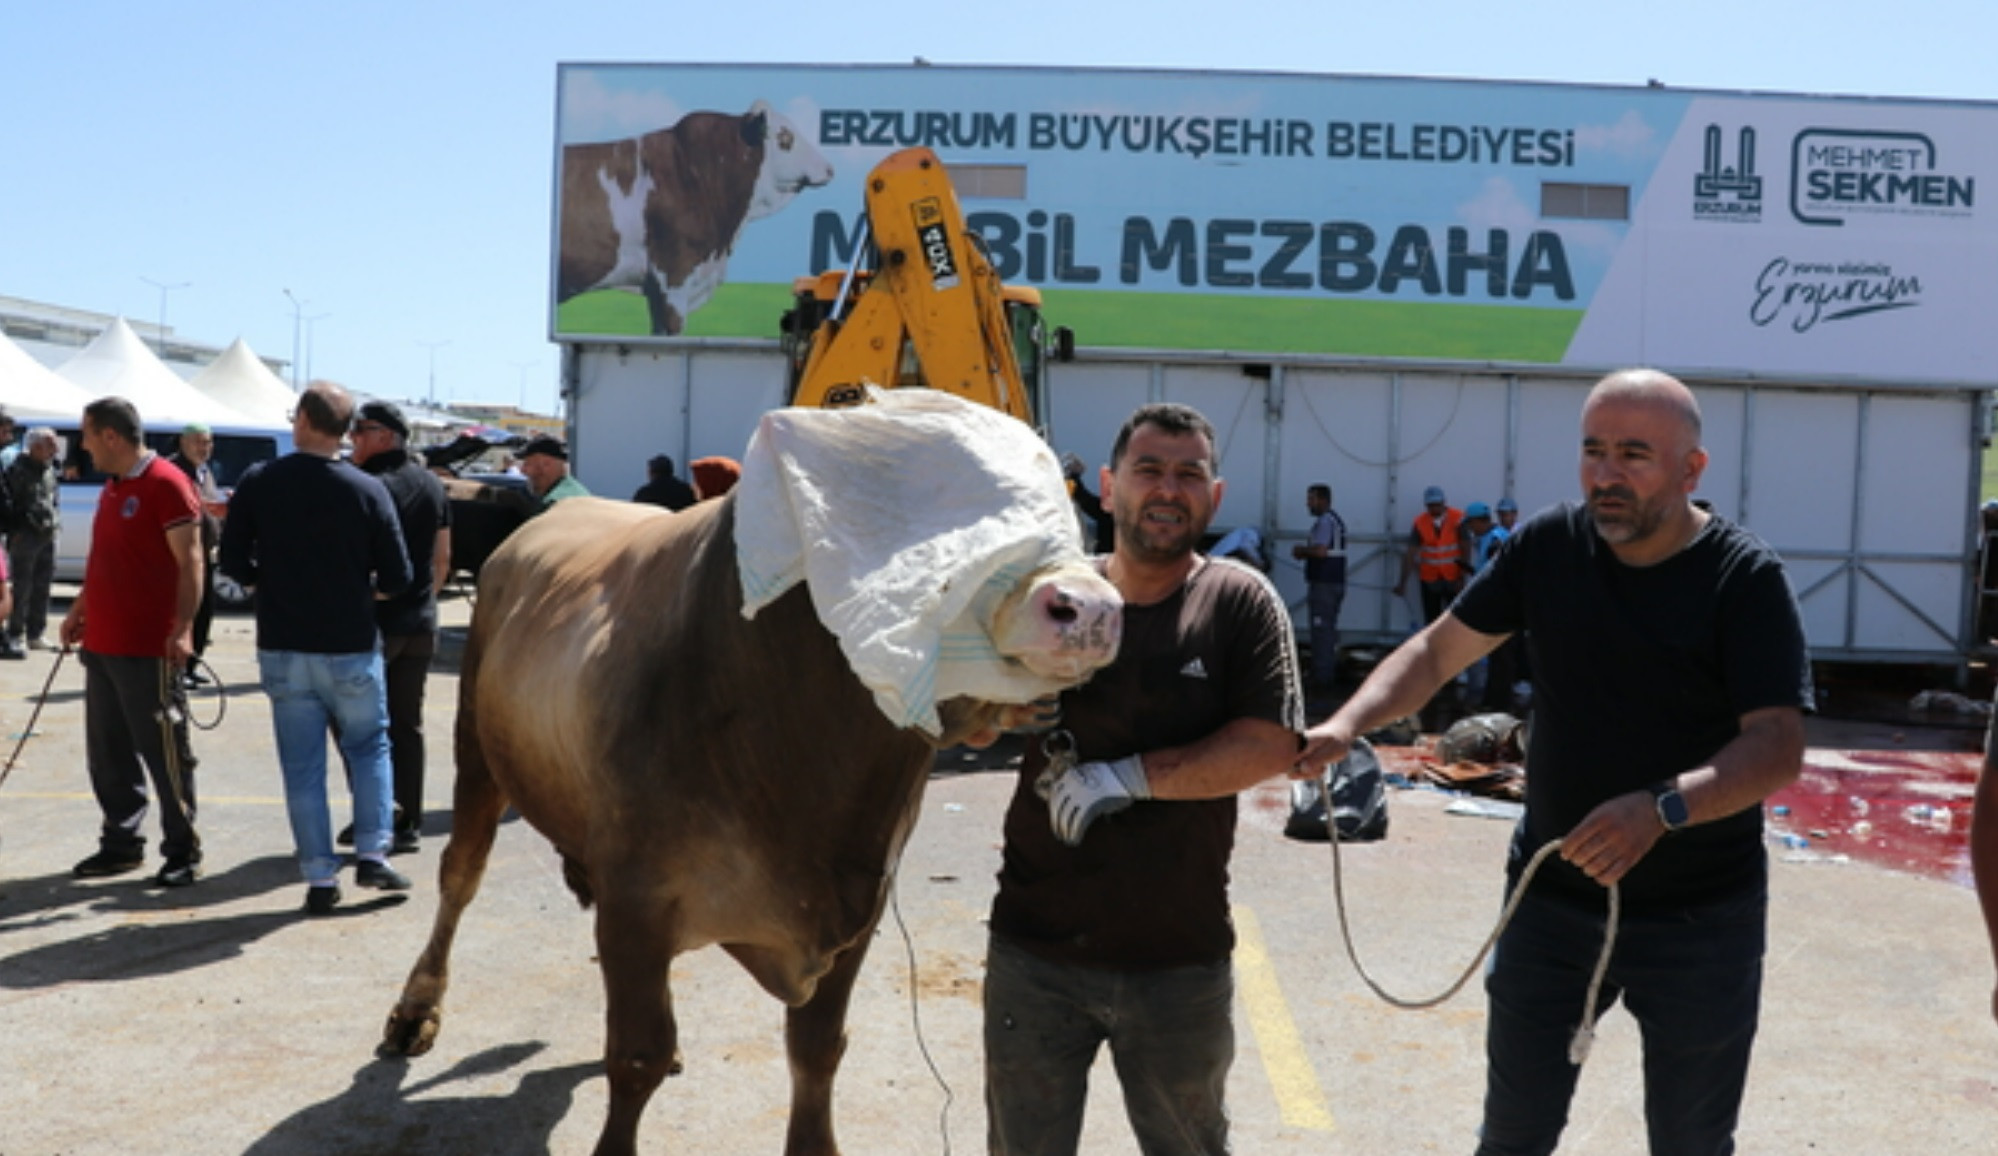 Erzurum'daki mobil mezbahalarda yoğunluk yaşandı